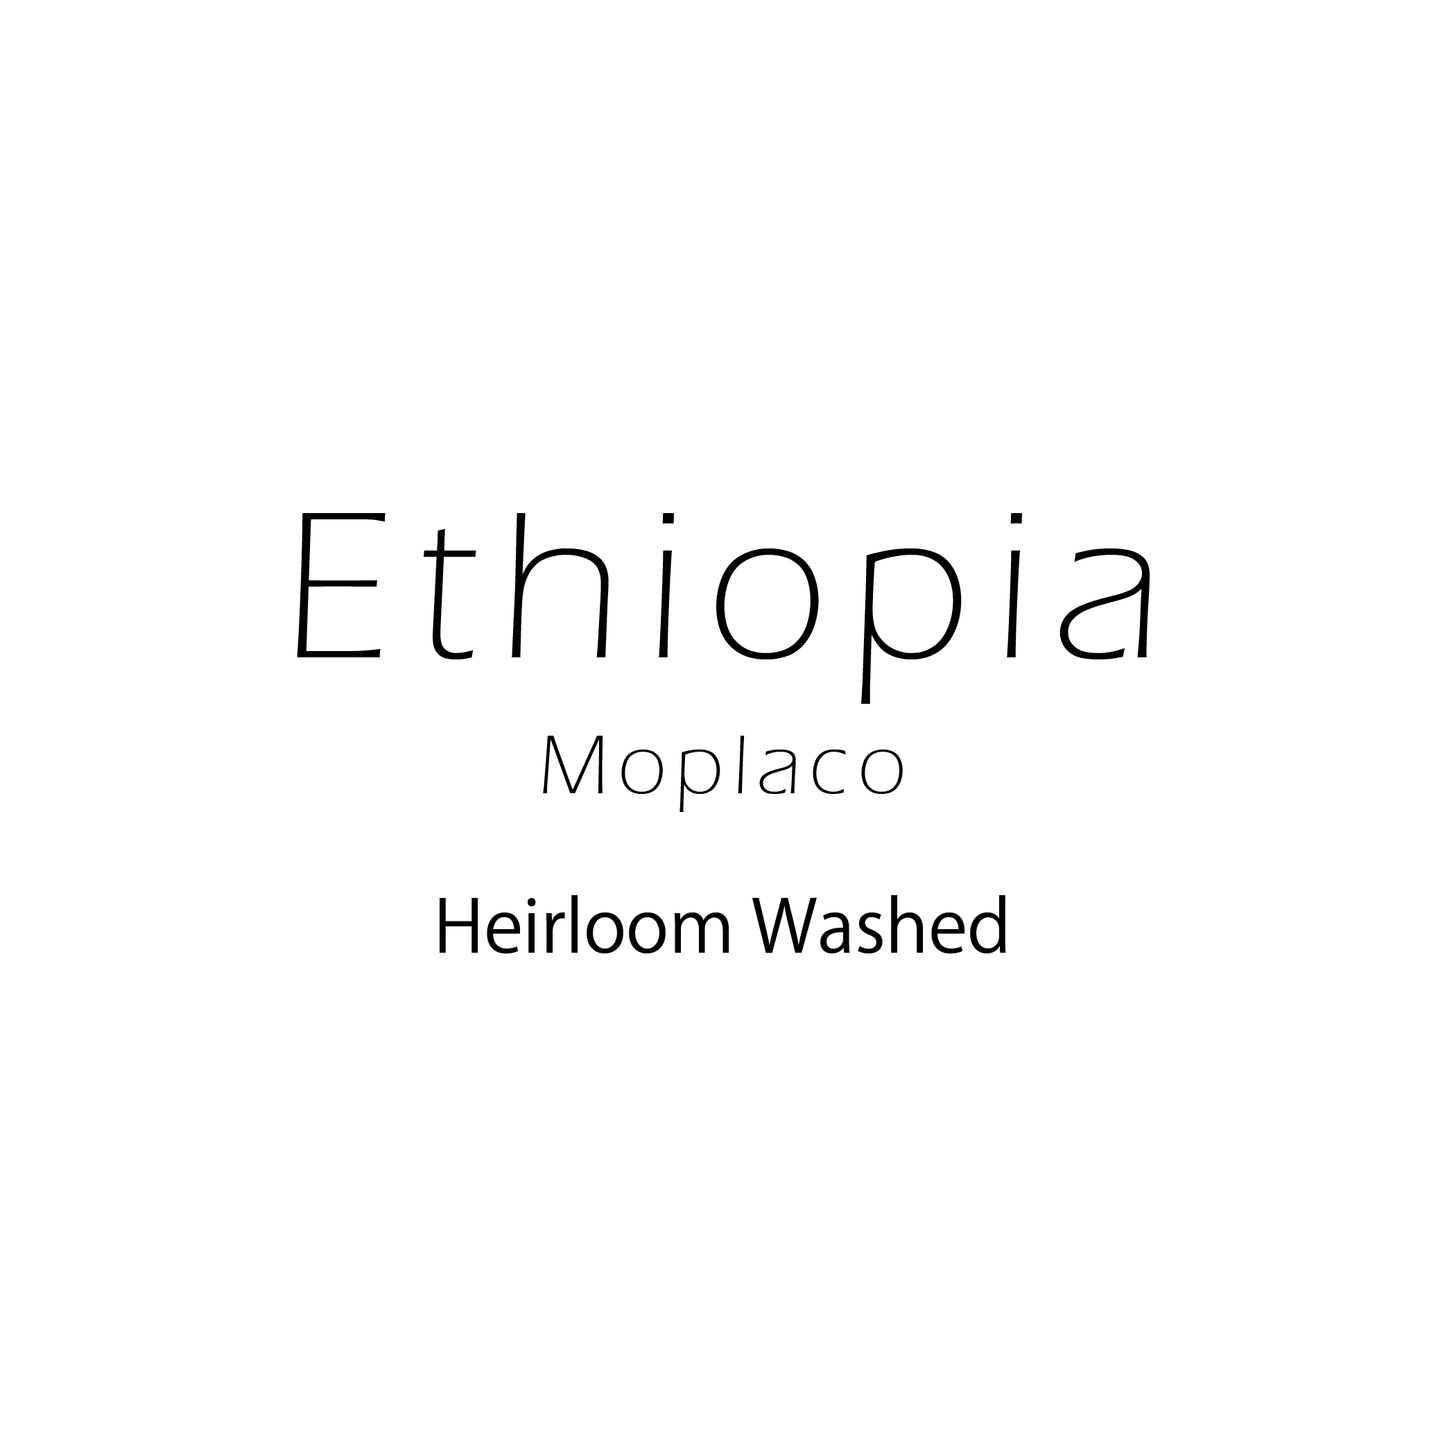 エチオピア エアルーム ウォッシュト Ethiopia Heirloom Washed